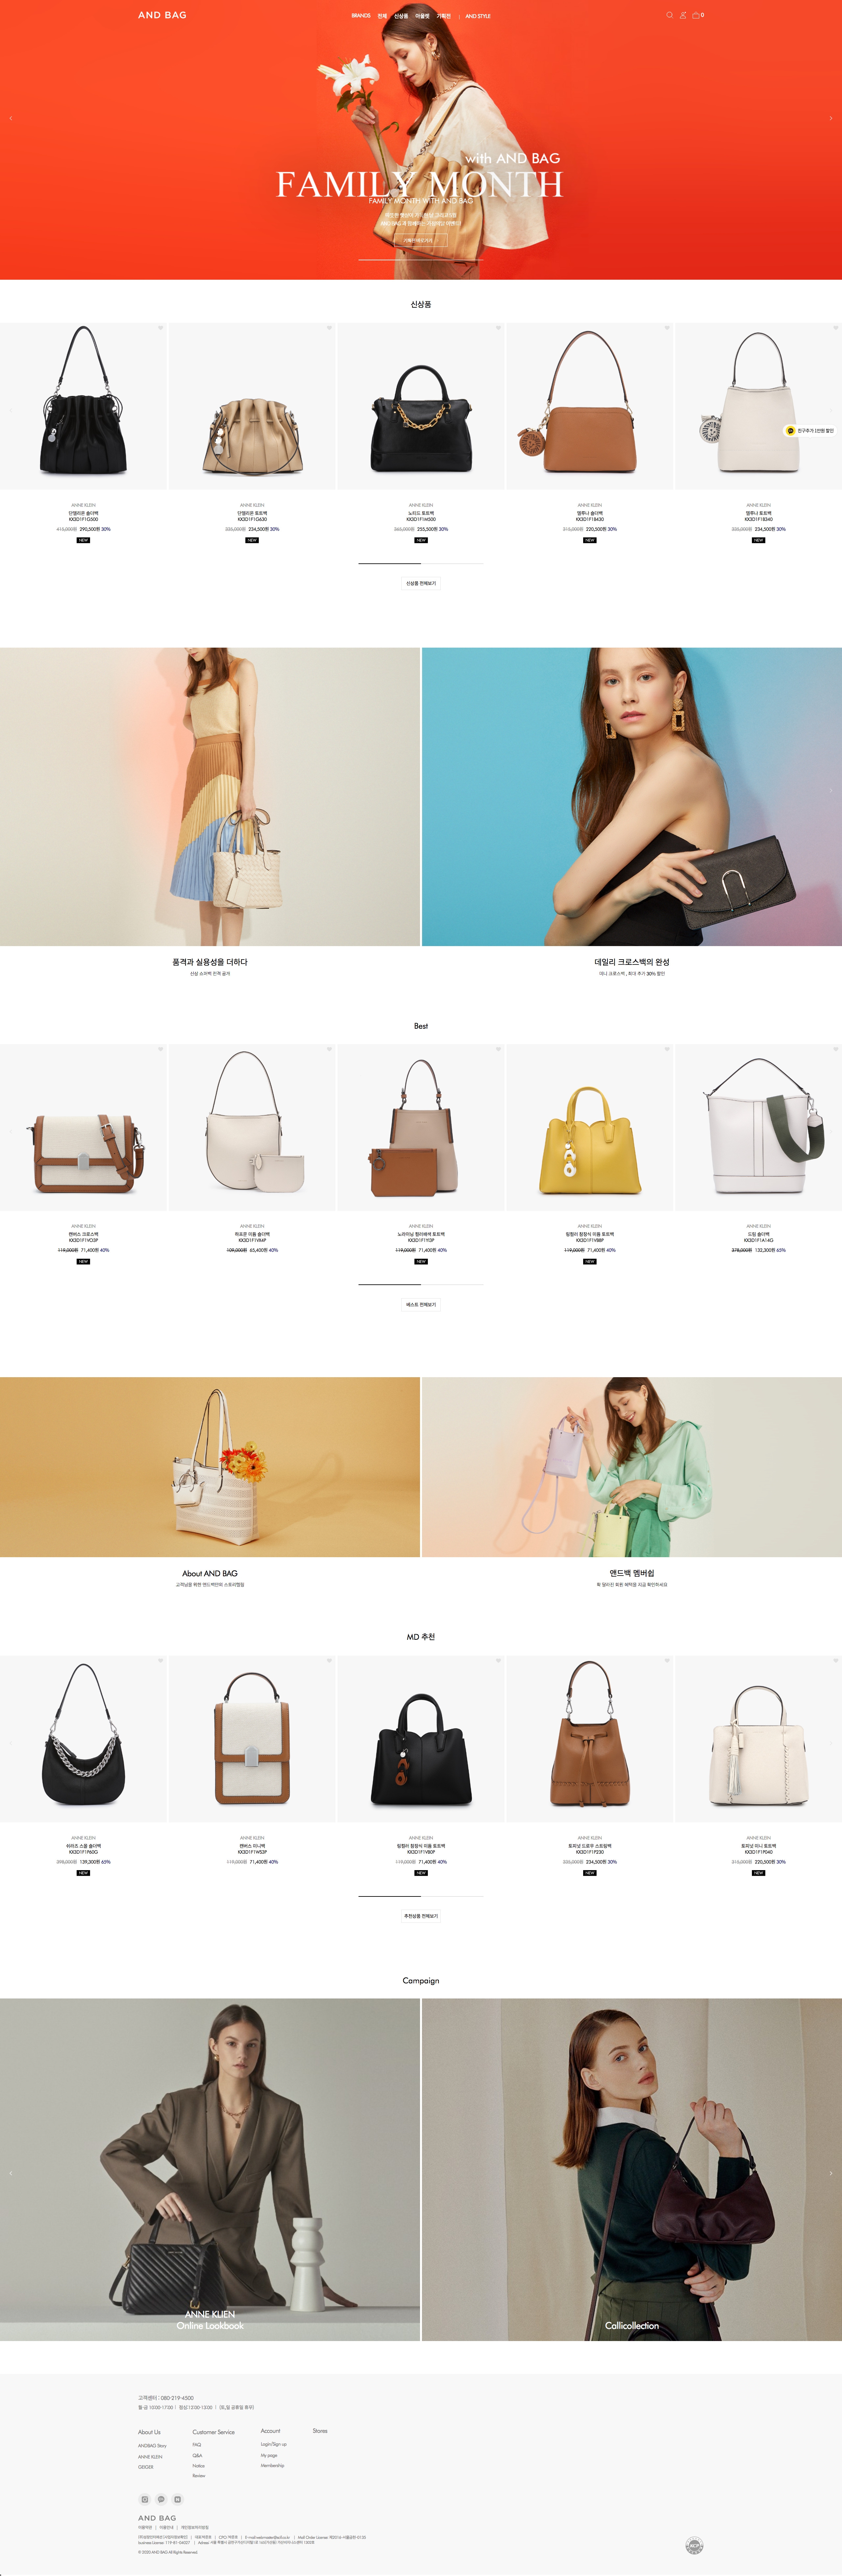 韩国AND BAG包包购物网站设计